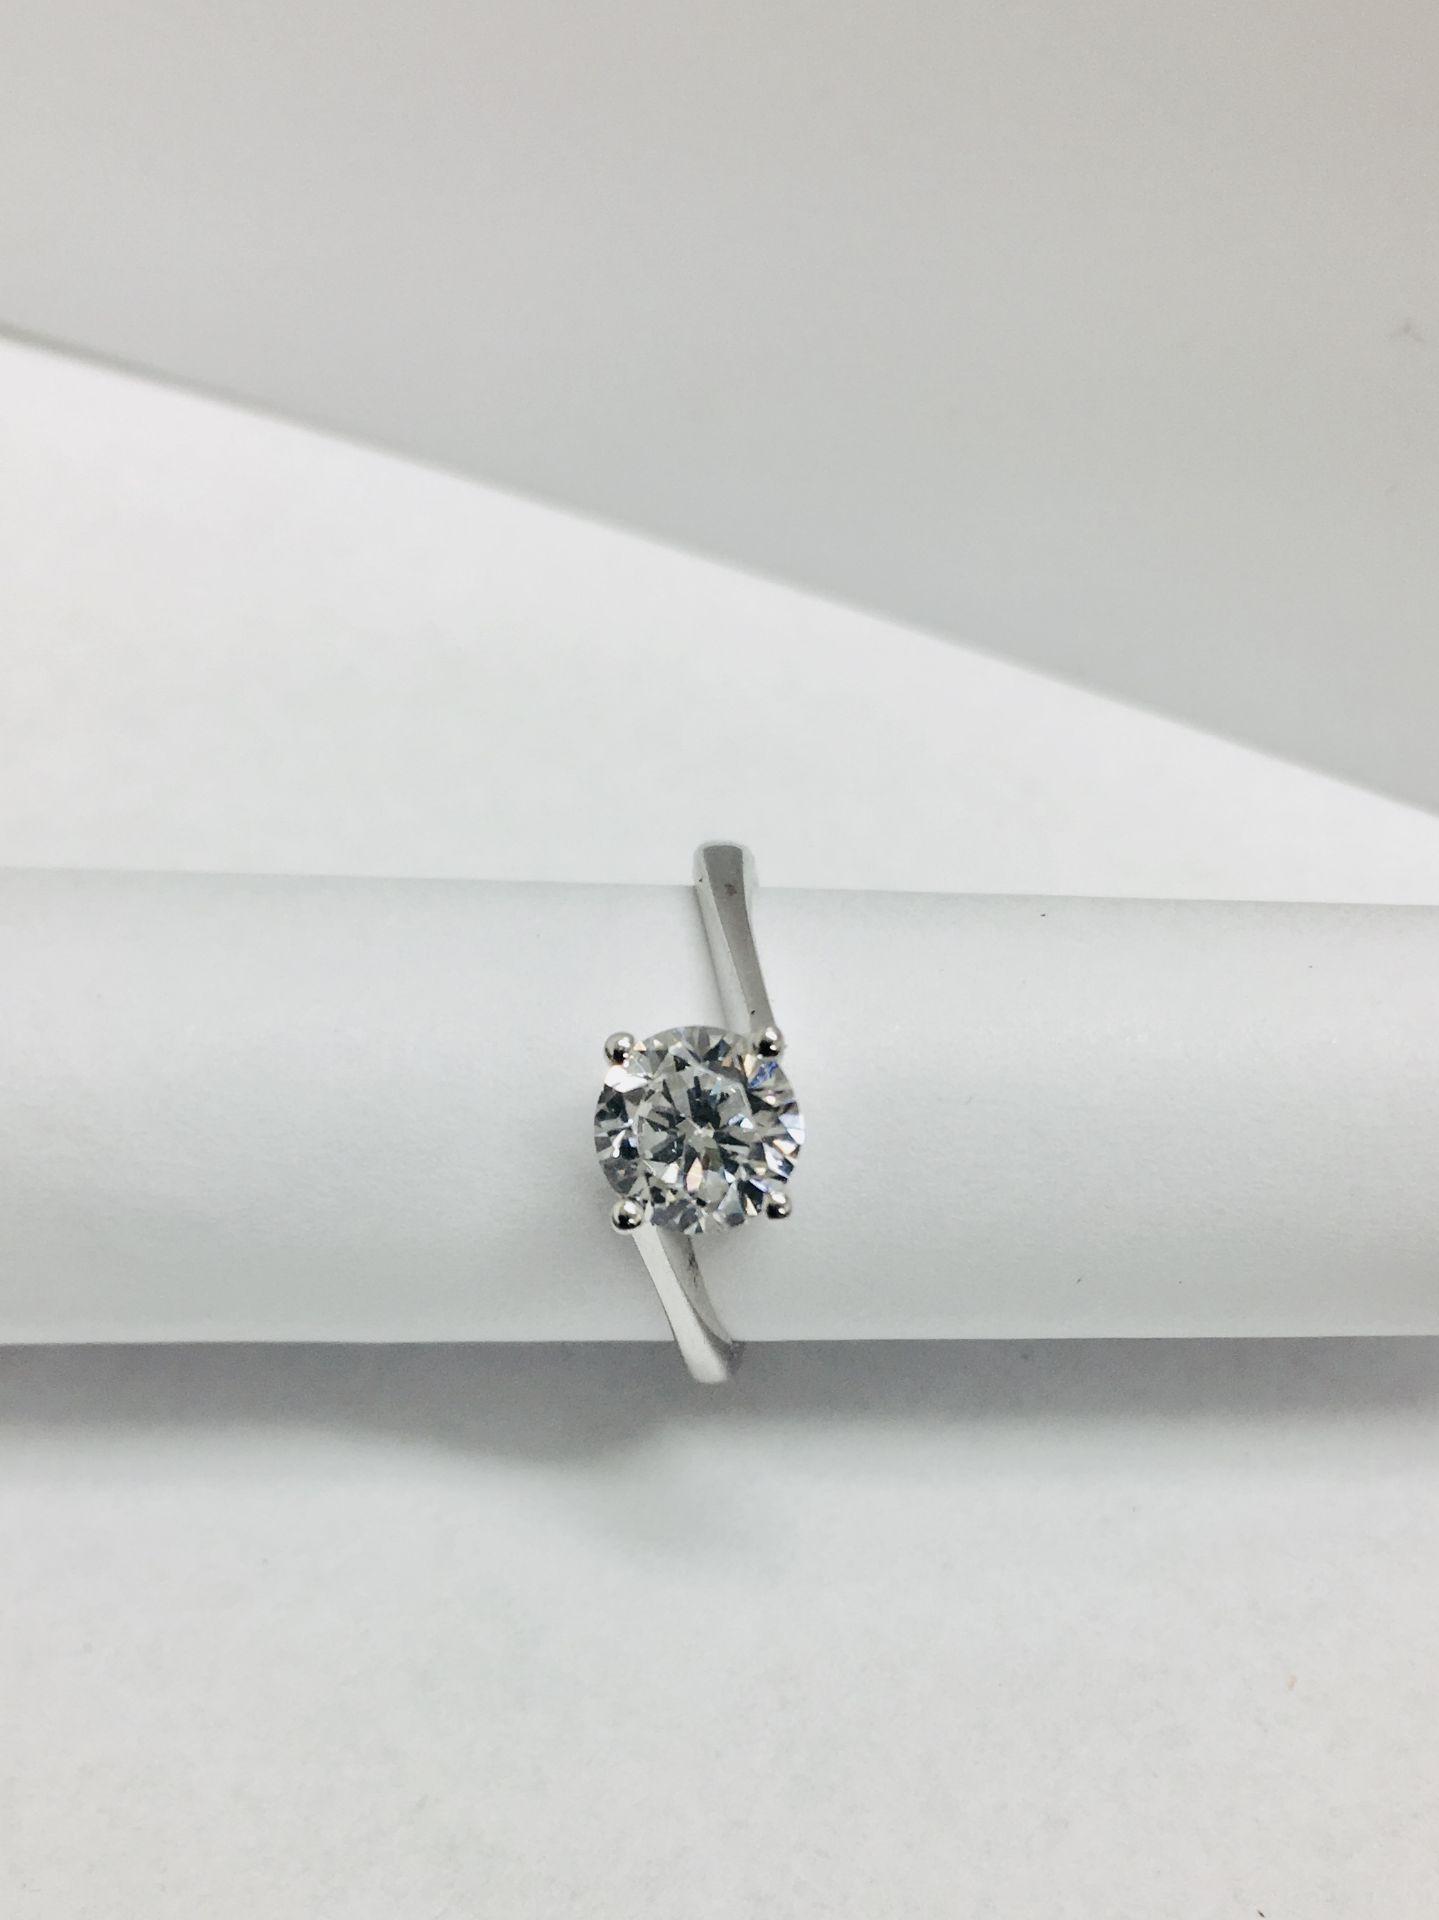 platinum twist solitaire ring,0.50ct brilliant cut diamond vs clarity D colour,platinum 2.9gms 950, - Image 5 of 5